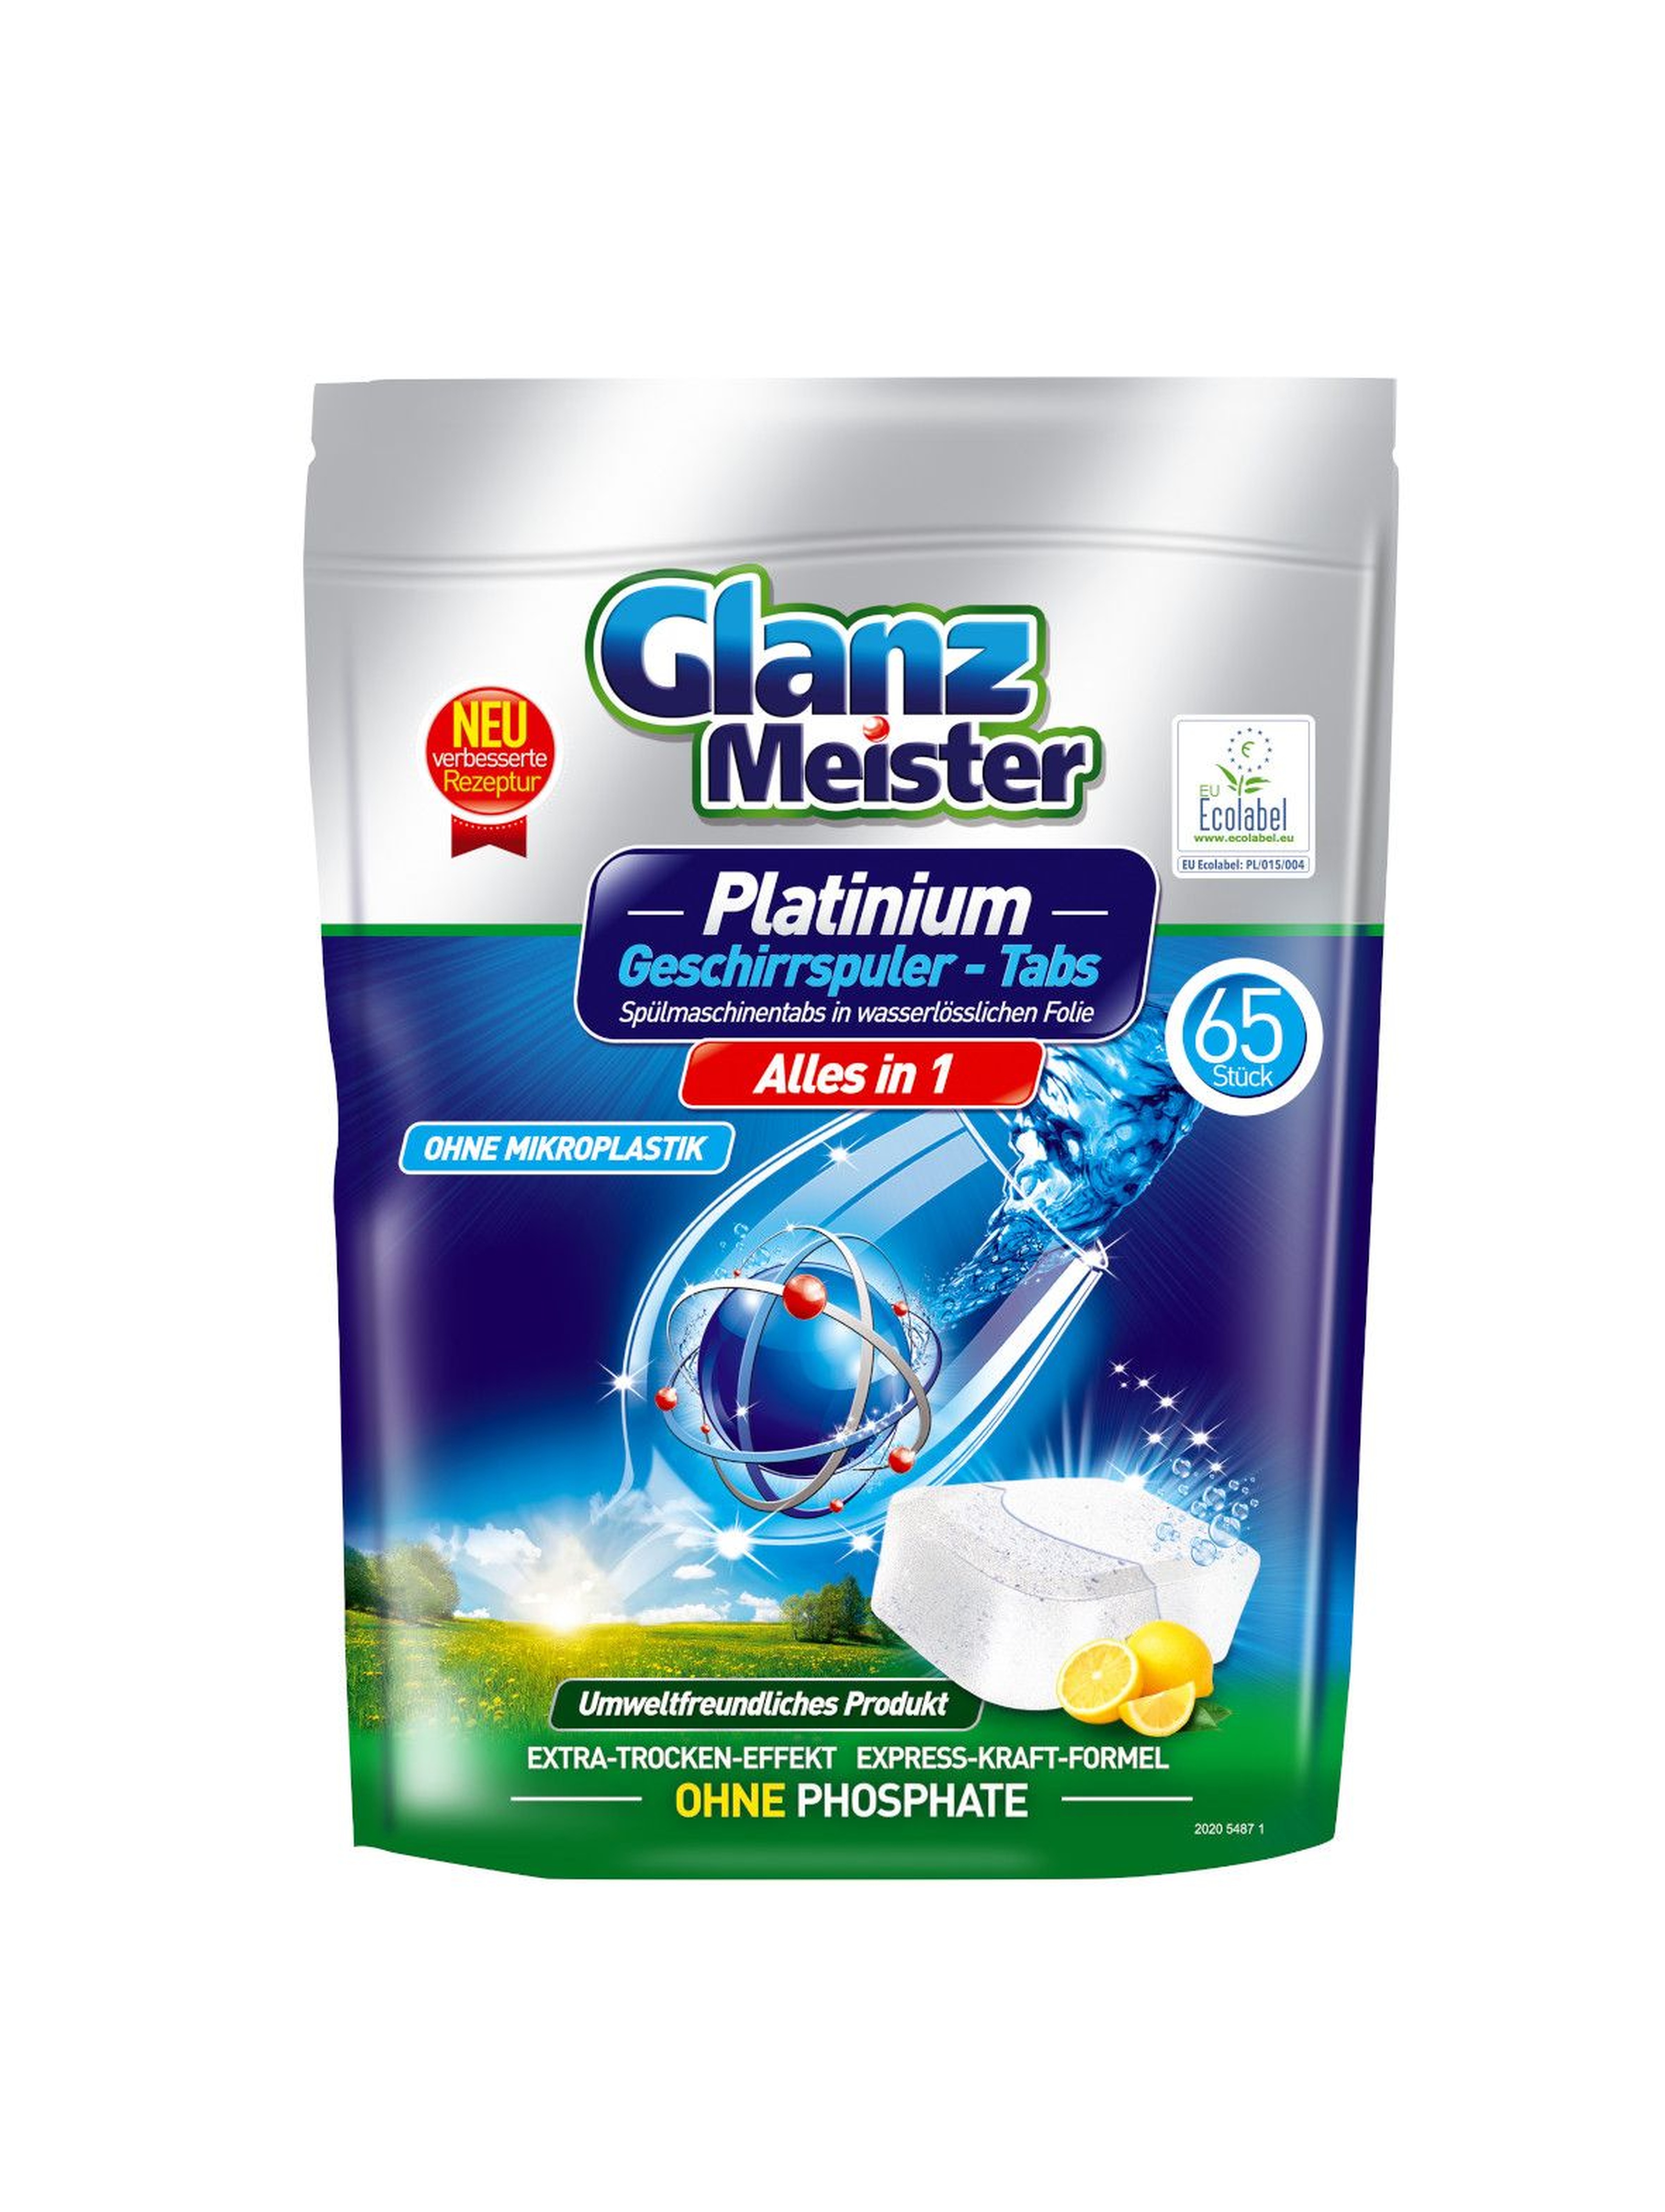 Glanz Meister tabletki do zmywarki Platinum A65 Eco Label